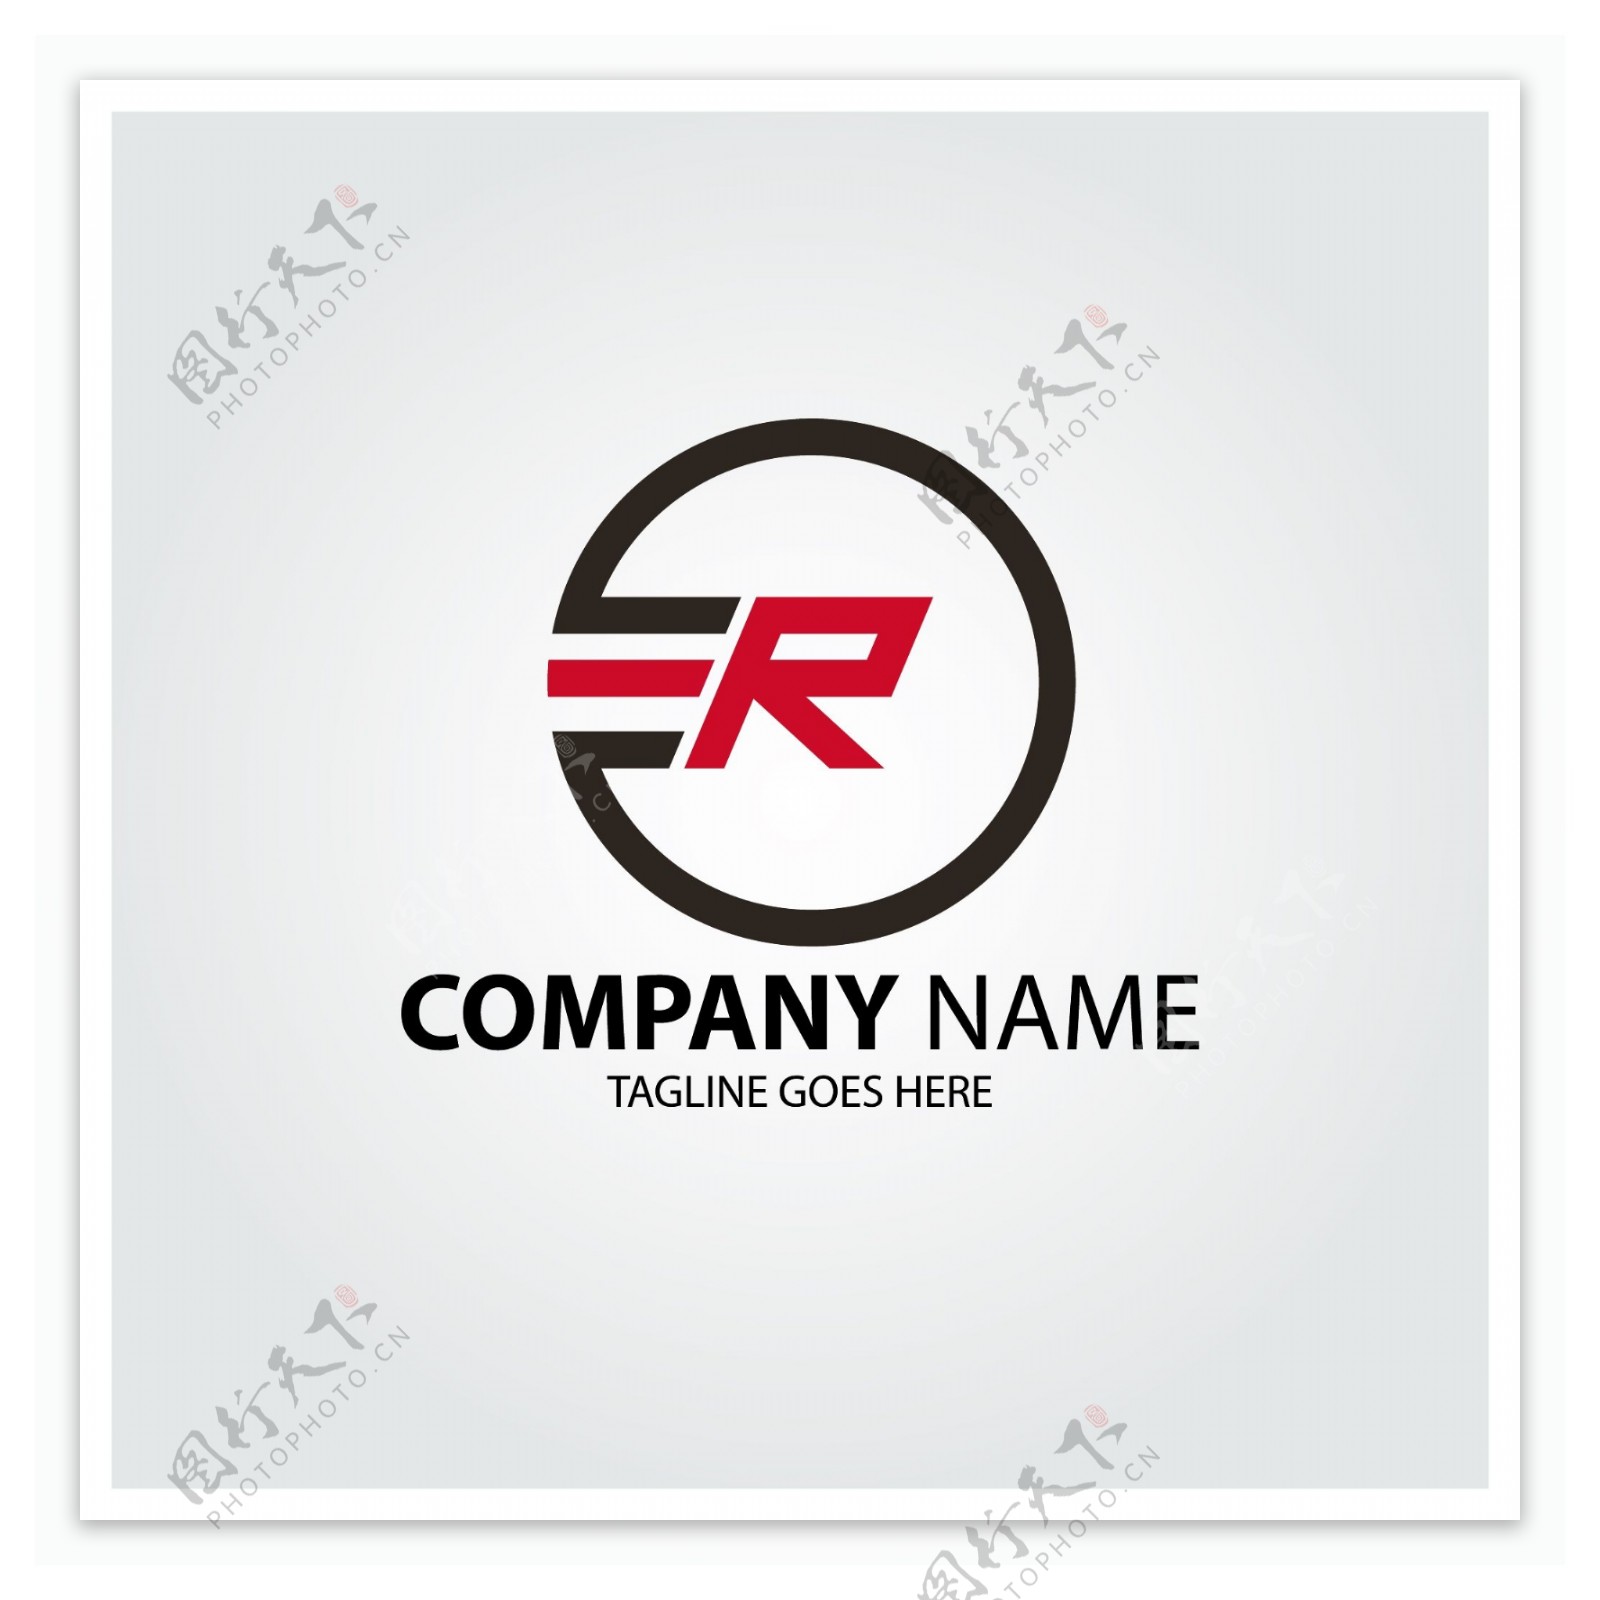 互联网科技标识logo通用类型logo